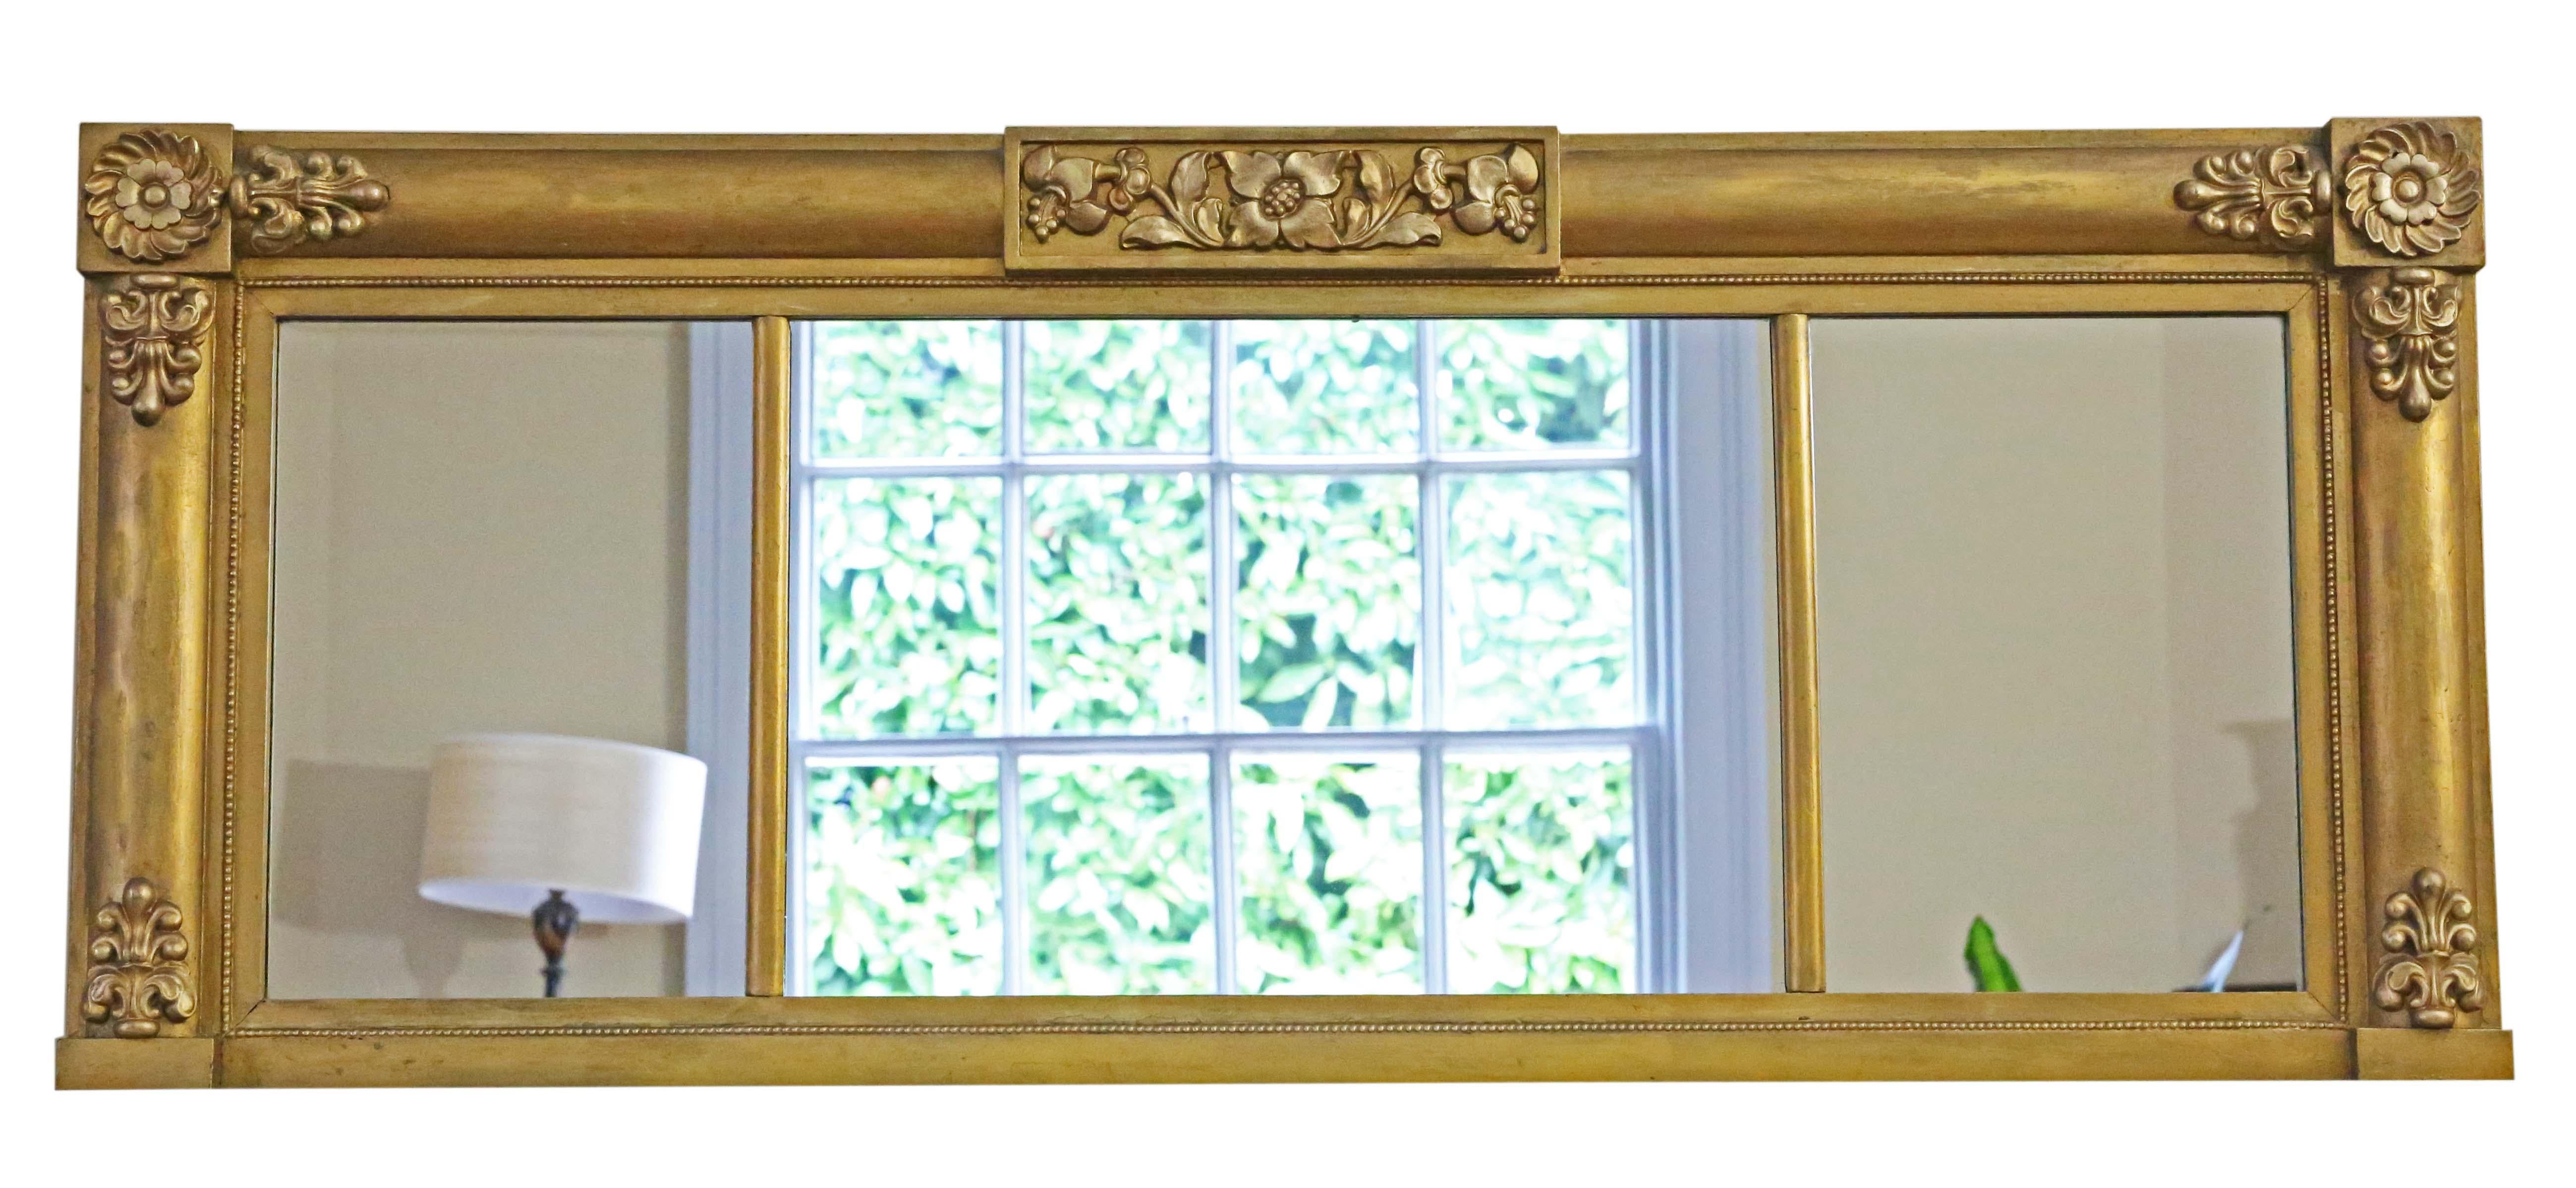 Miroir mural ancien du XIXe siècle, de grande qualité, avec une décoration florale délicate.

Ce miroir séduit par son design simple mais saisissant, ajoutant du caractère à tout espace approprié. Le cadre est robuste, sans joints lâches ni vers de